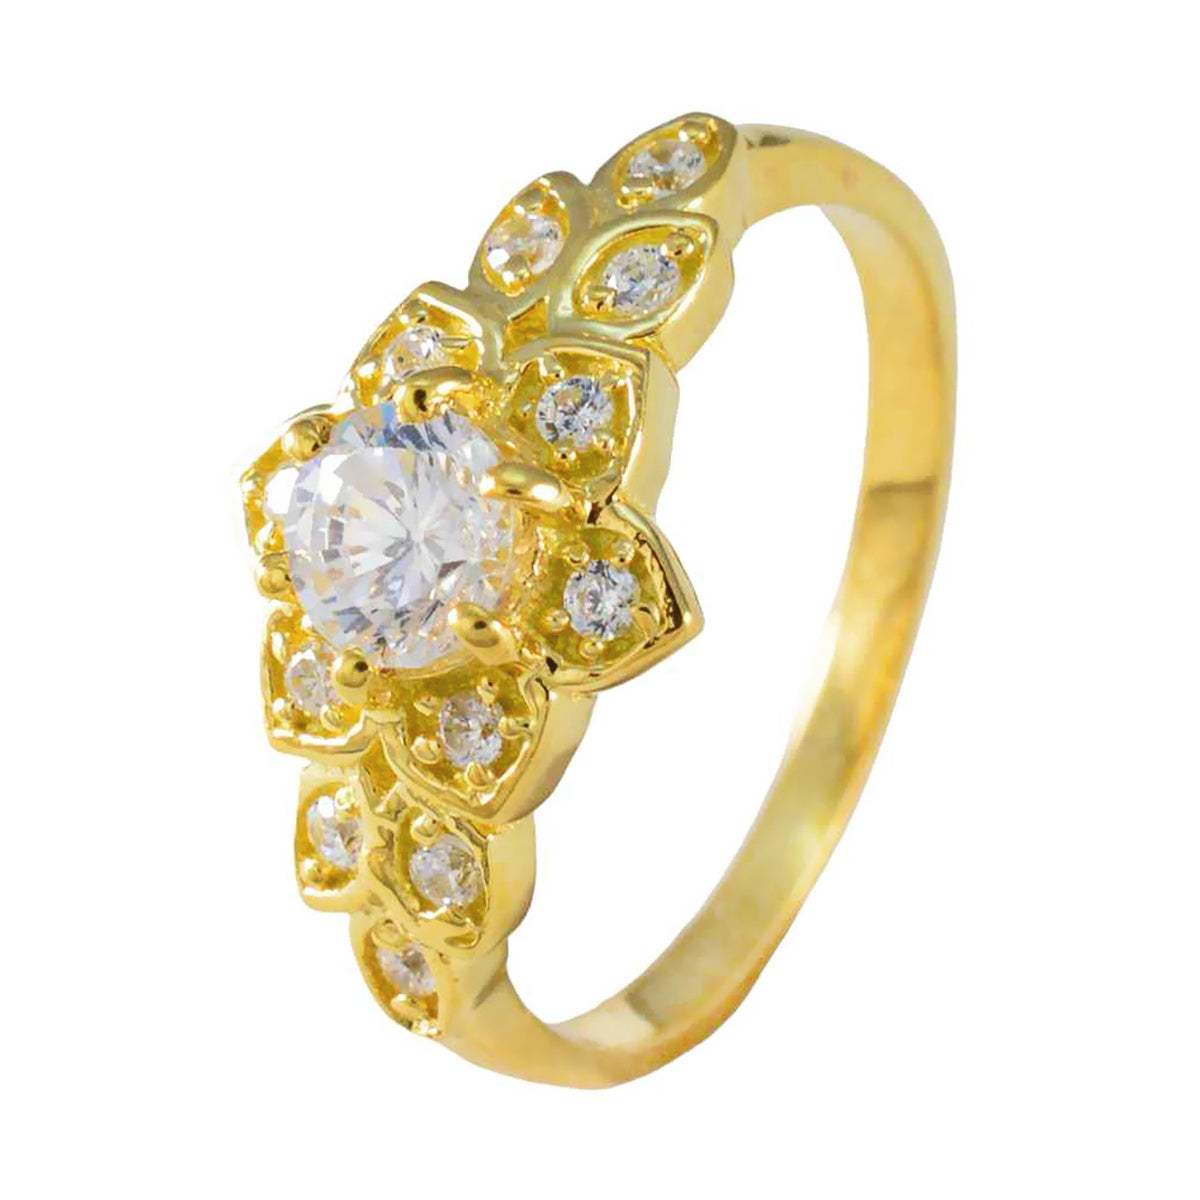 Riyo – bague en argent souhaitable avec placage en or jaune, pierre cz blanche, forme ronde, réglage à griffes, bijoux élégants, bague du nouvel an